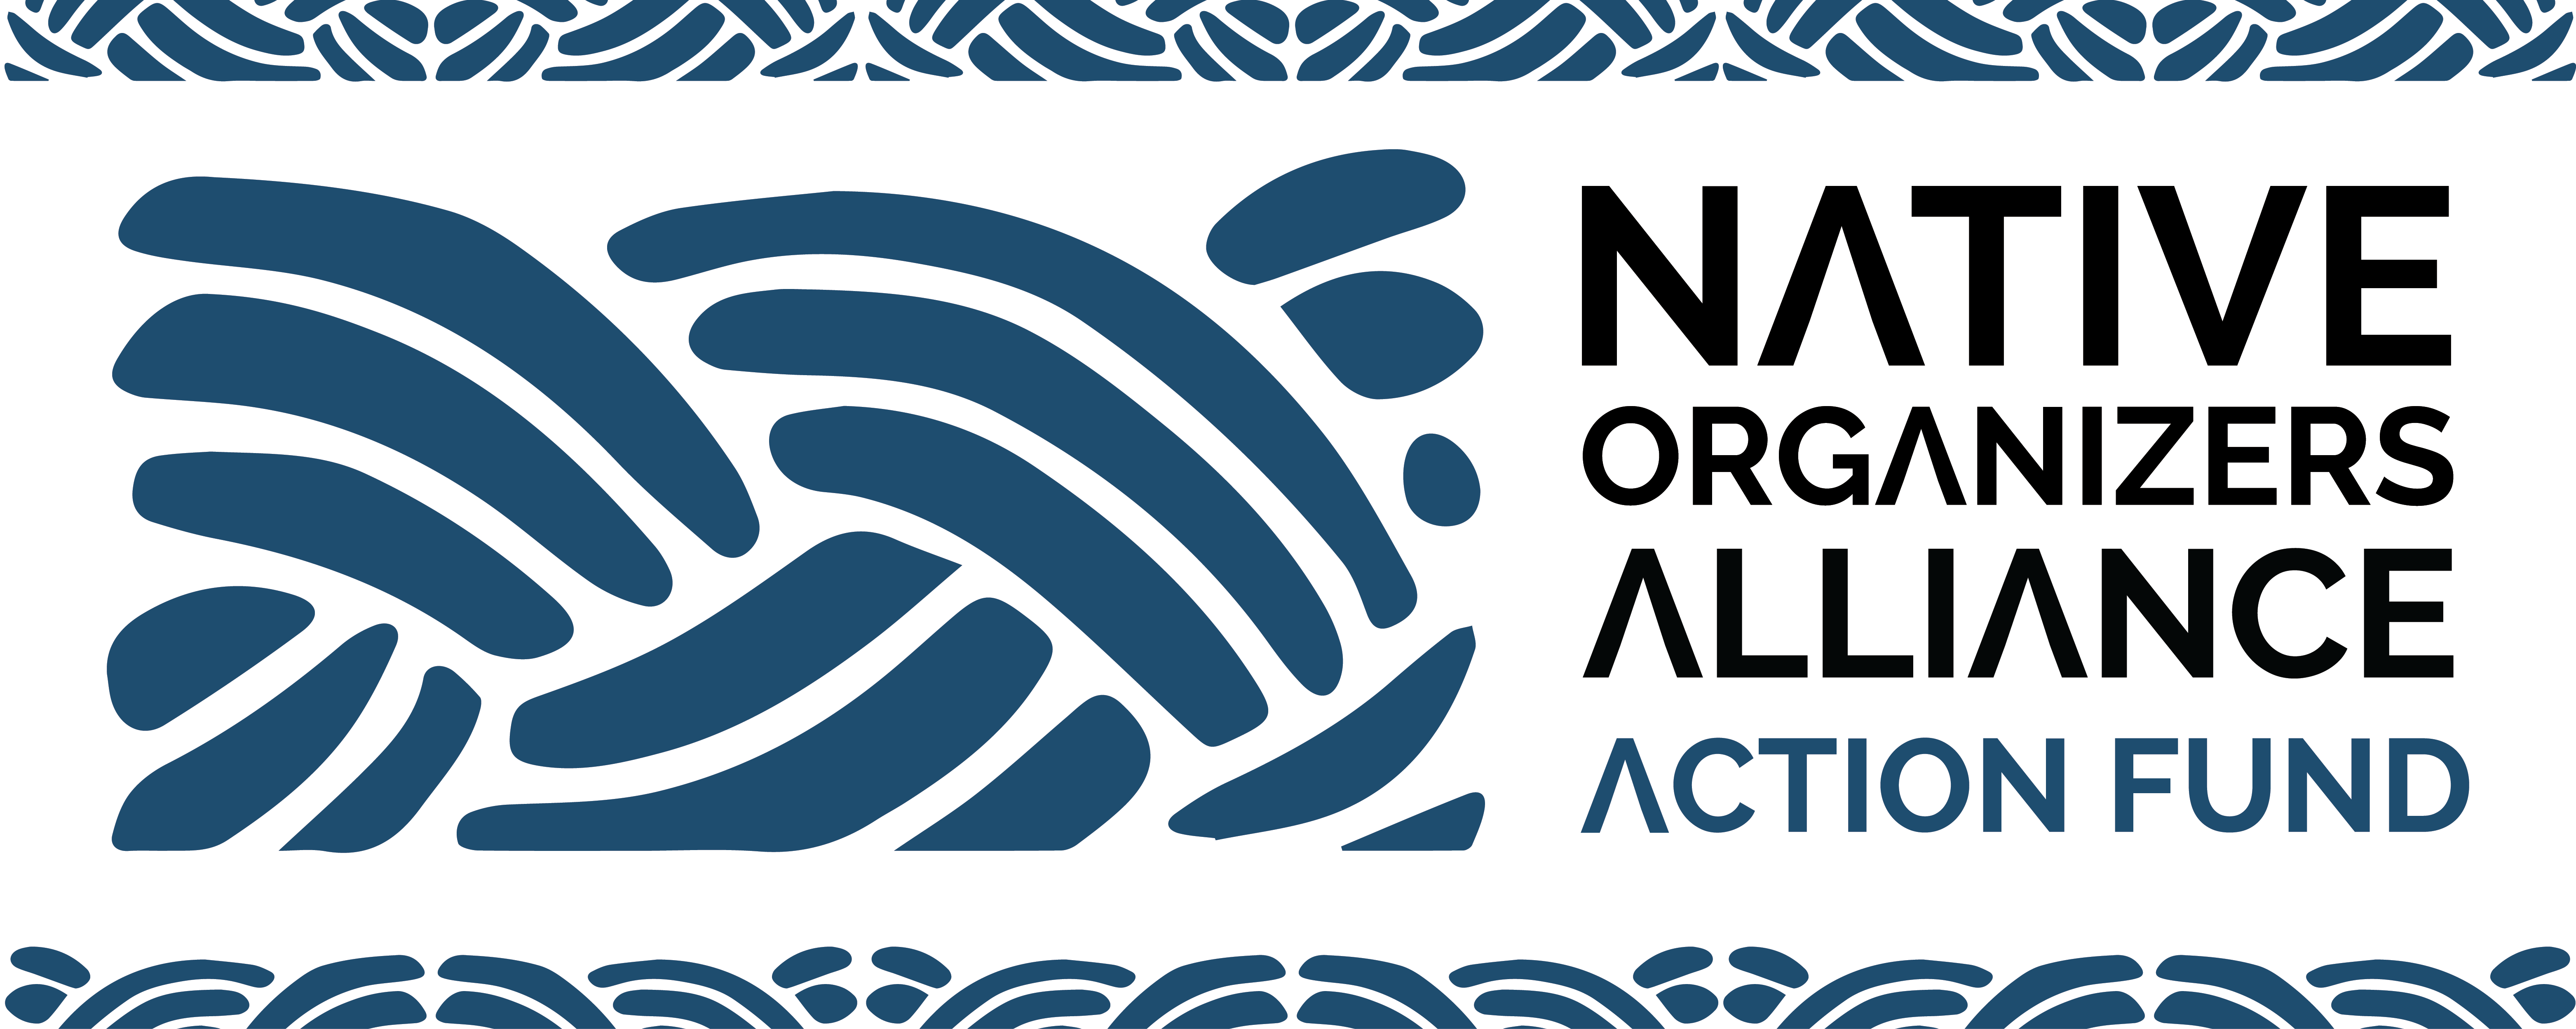 Native Organizers Alliance Action Fund